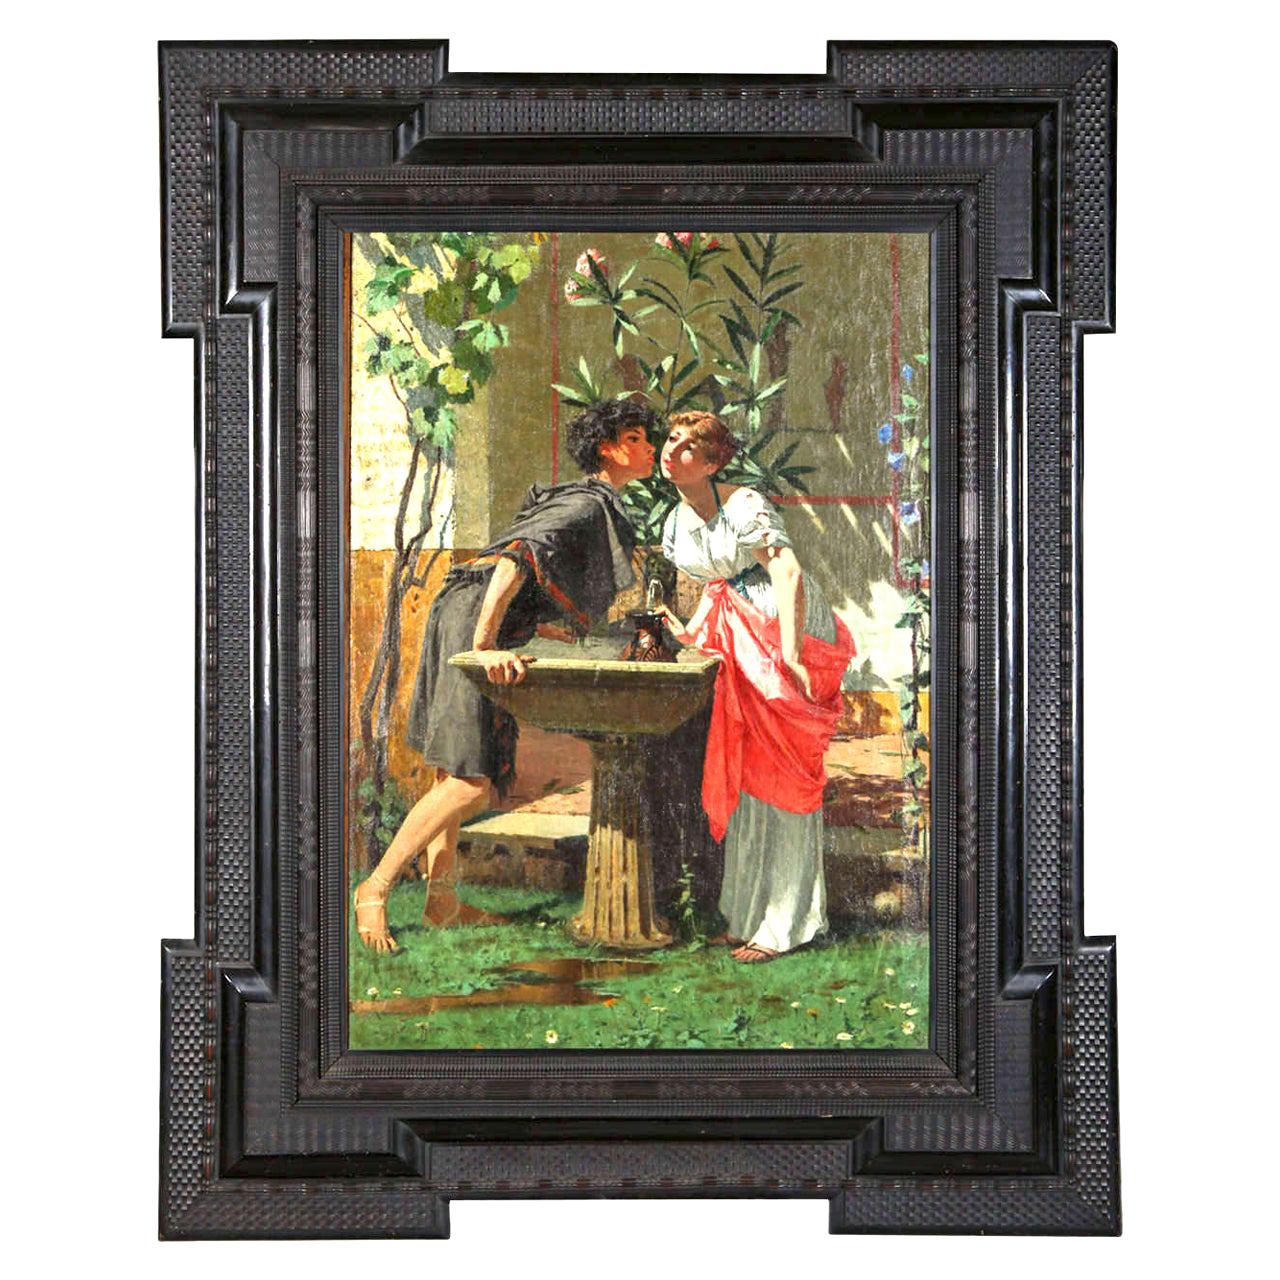 Lovers by a Fountain, Gemälde Öl auf Leinwand, Modesto Faustini, 1860